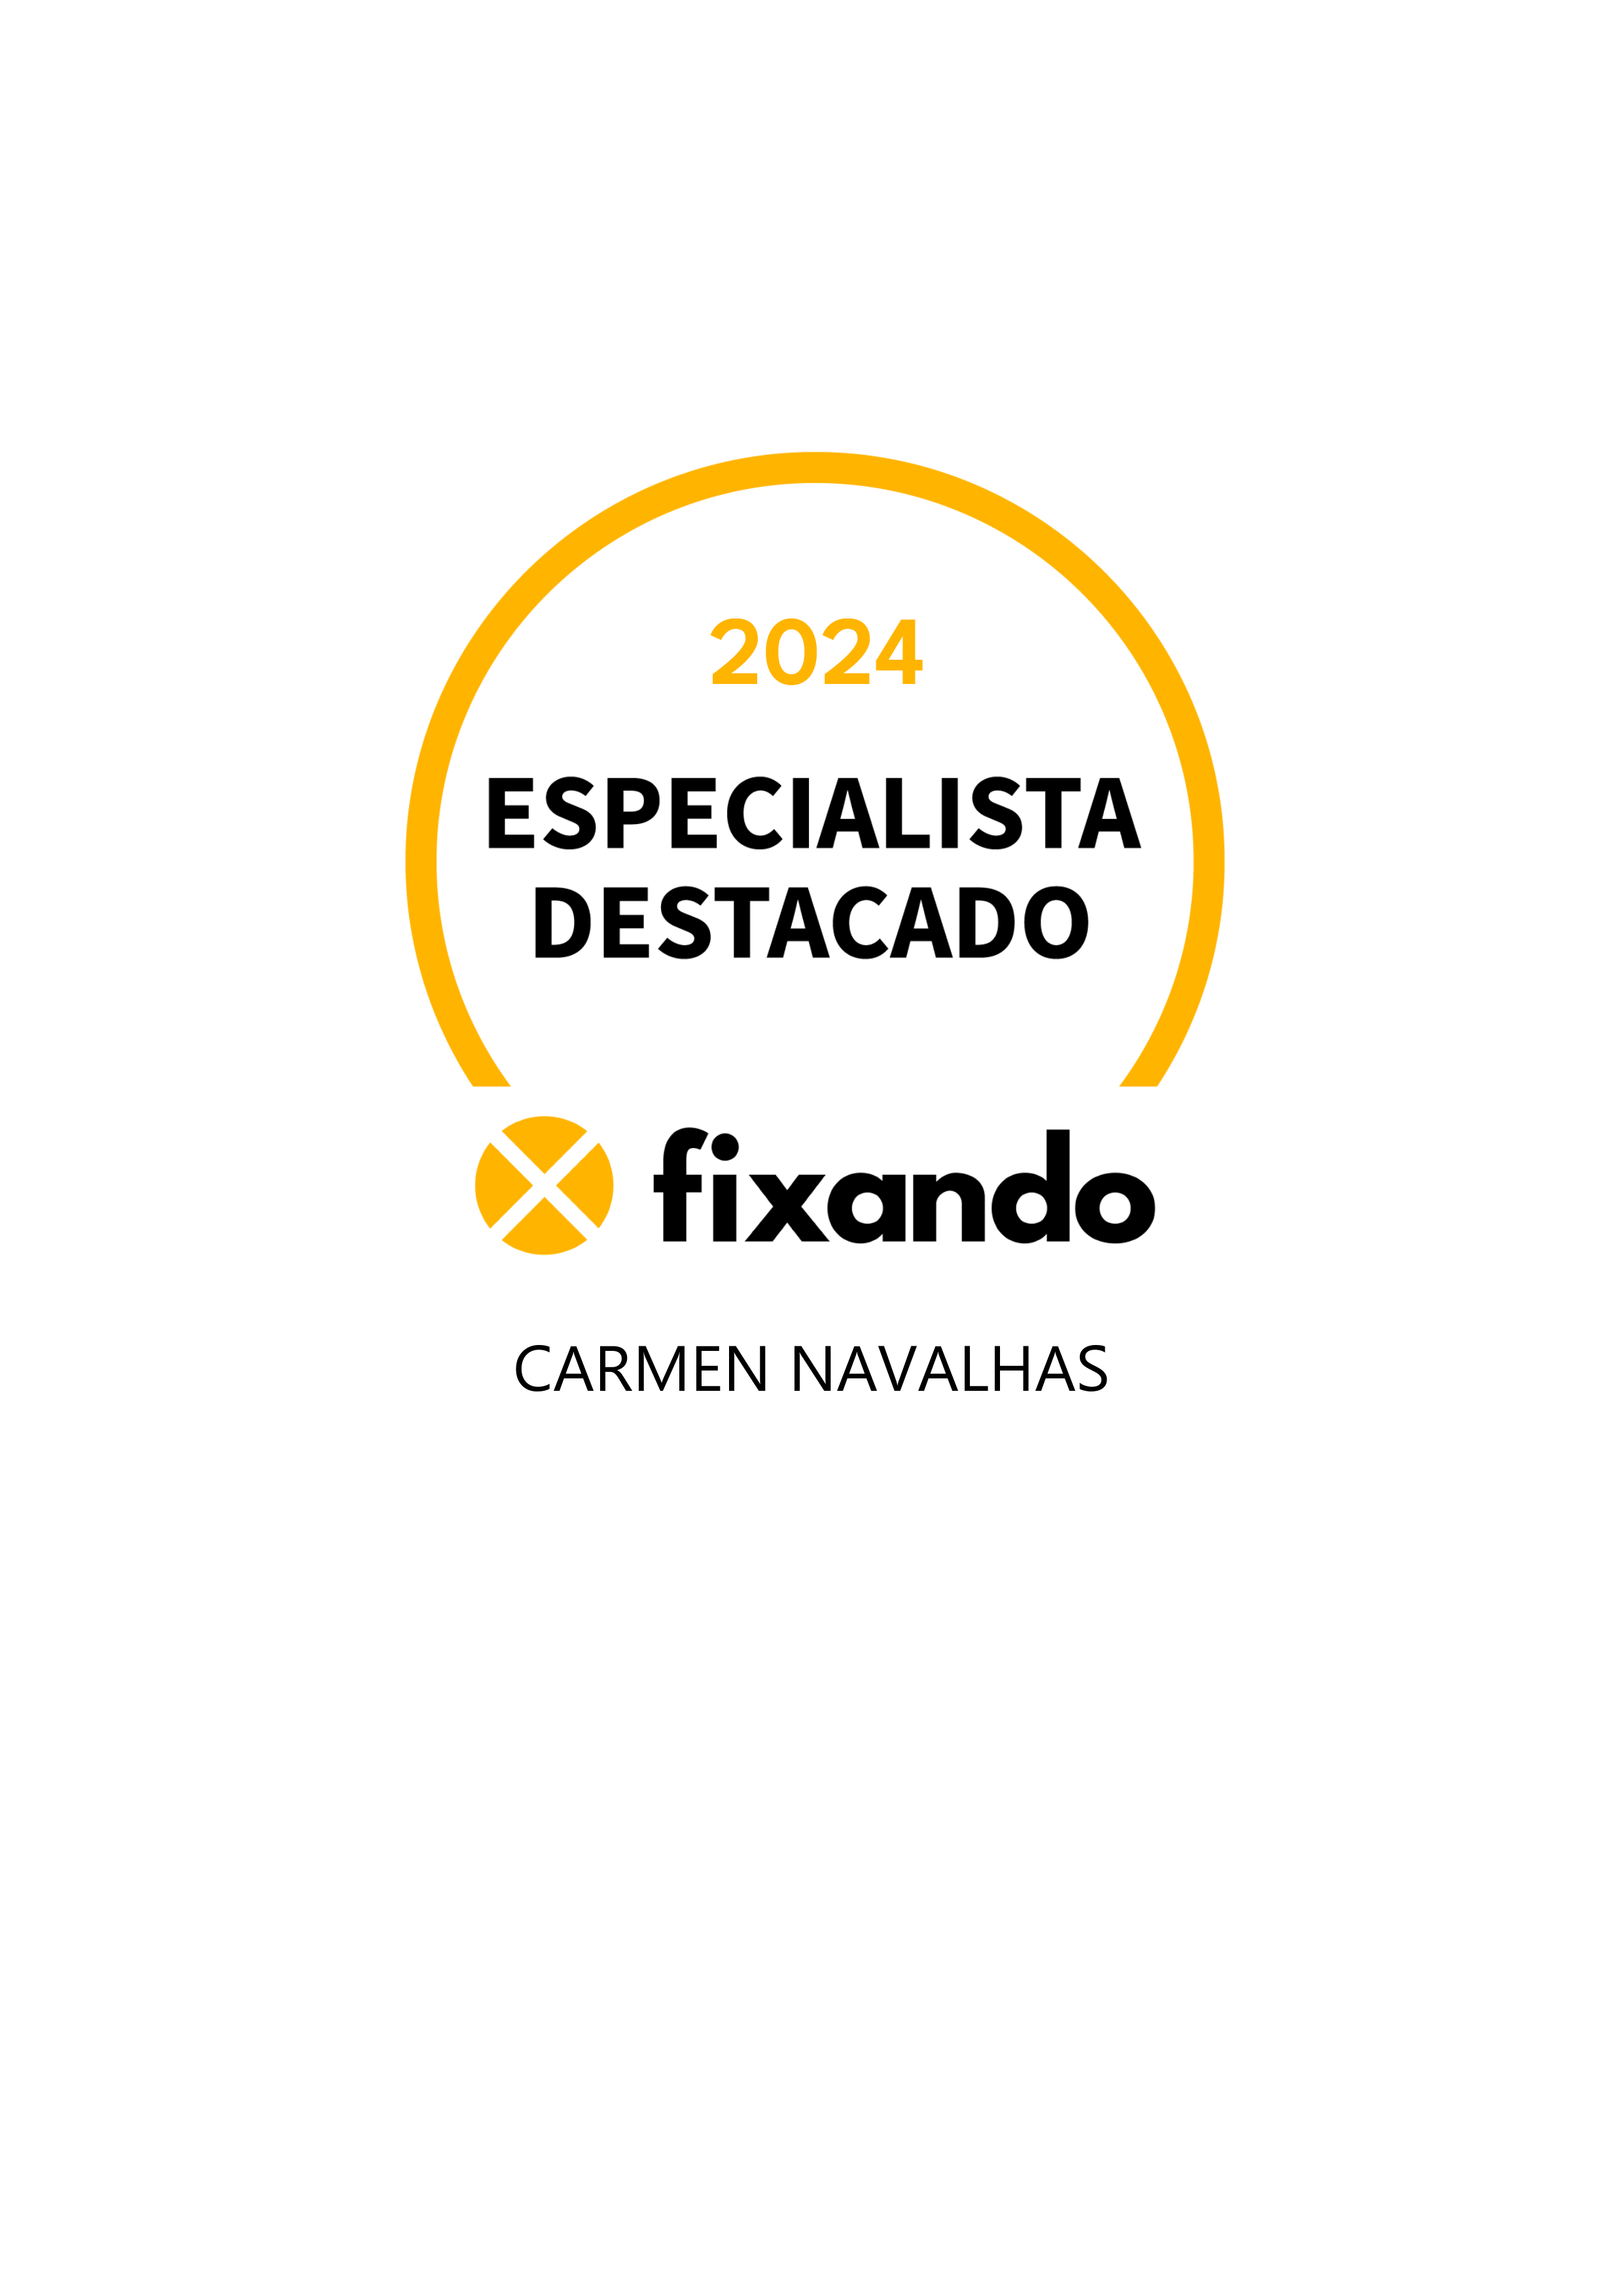 Carmen Navalhas - Reguengos de Monsaraz - Design de Logotipos